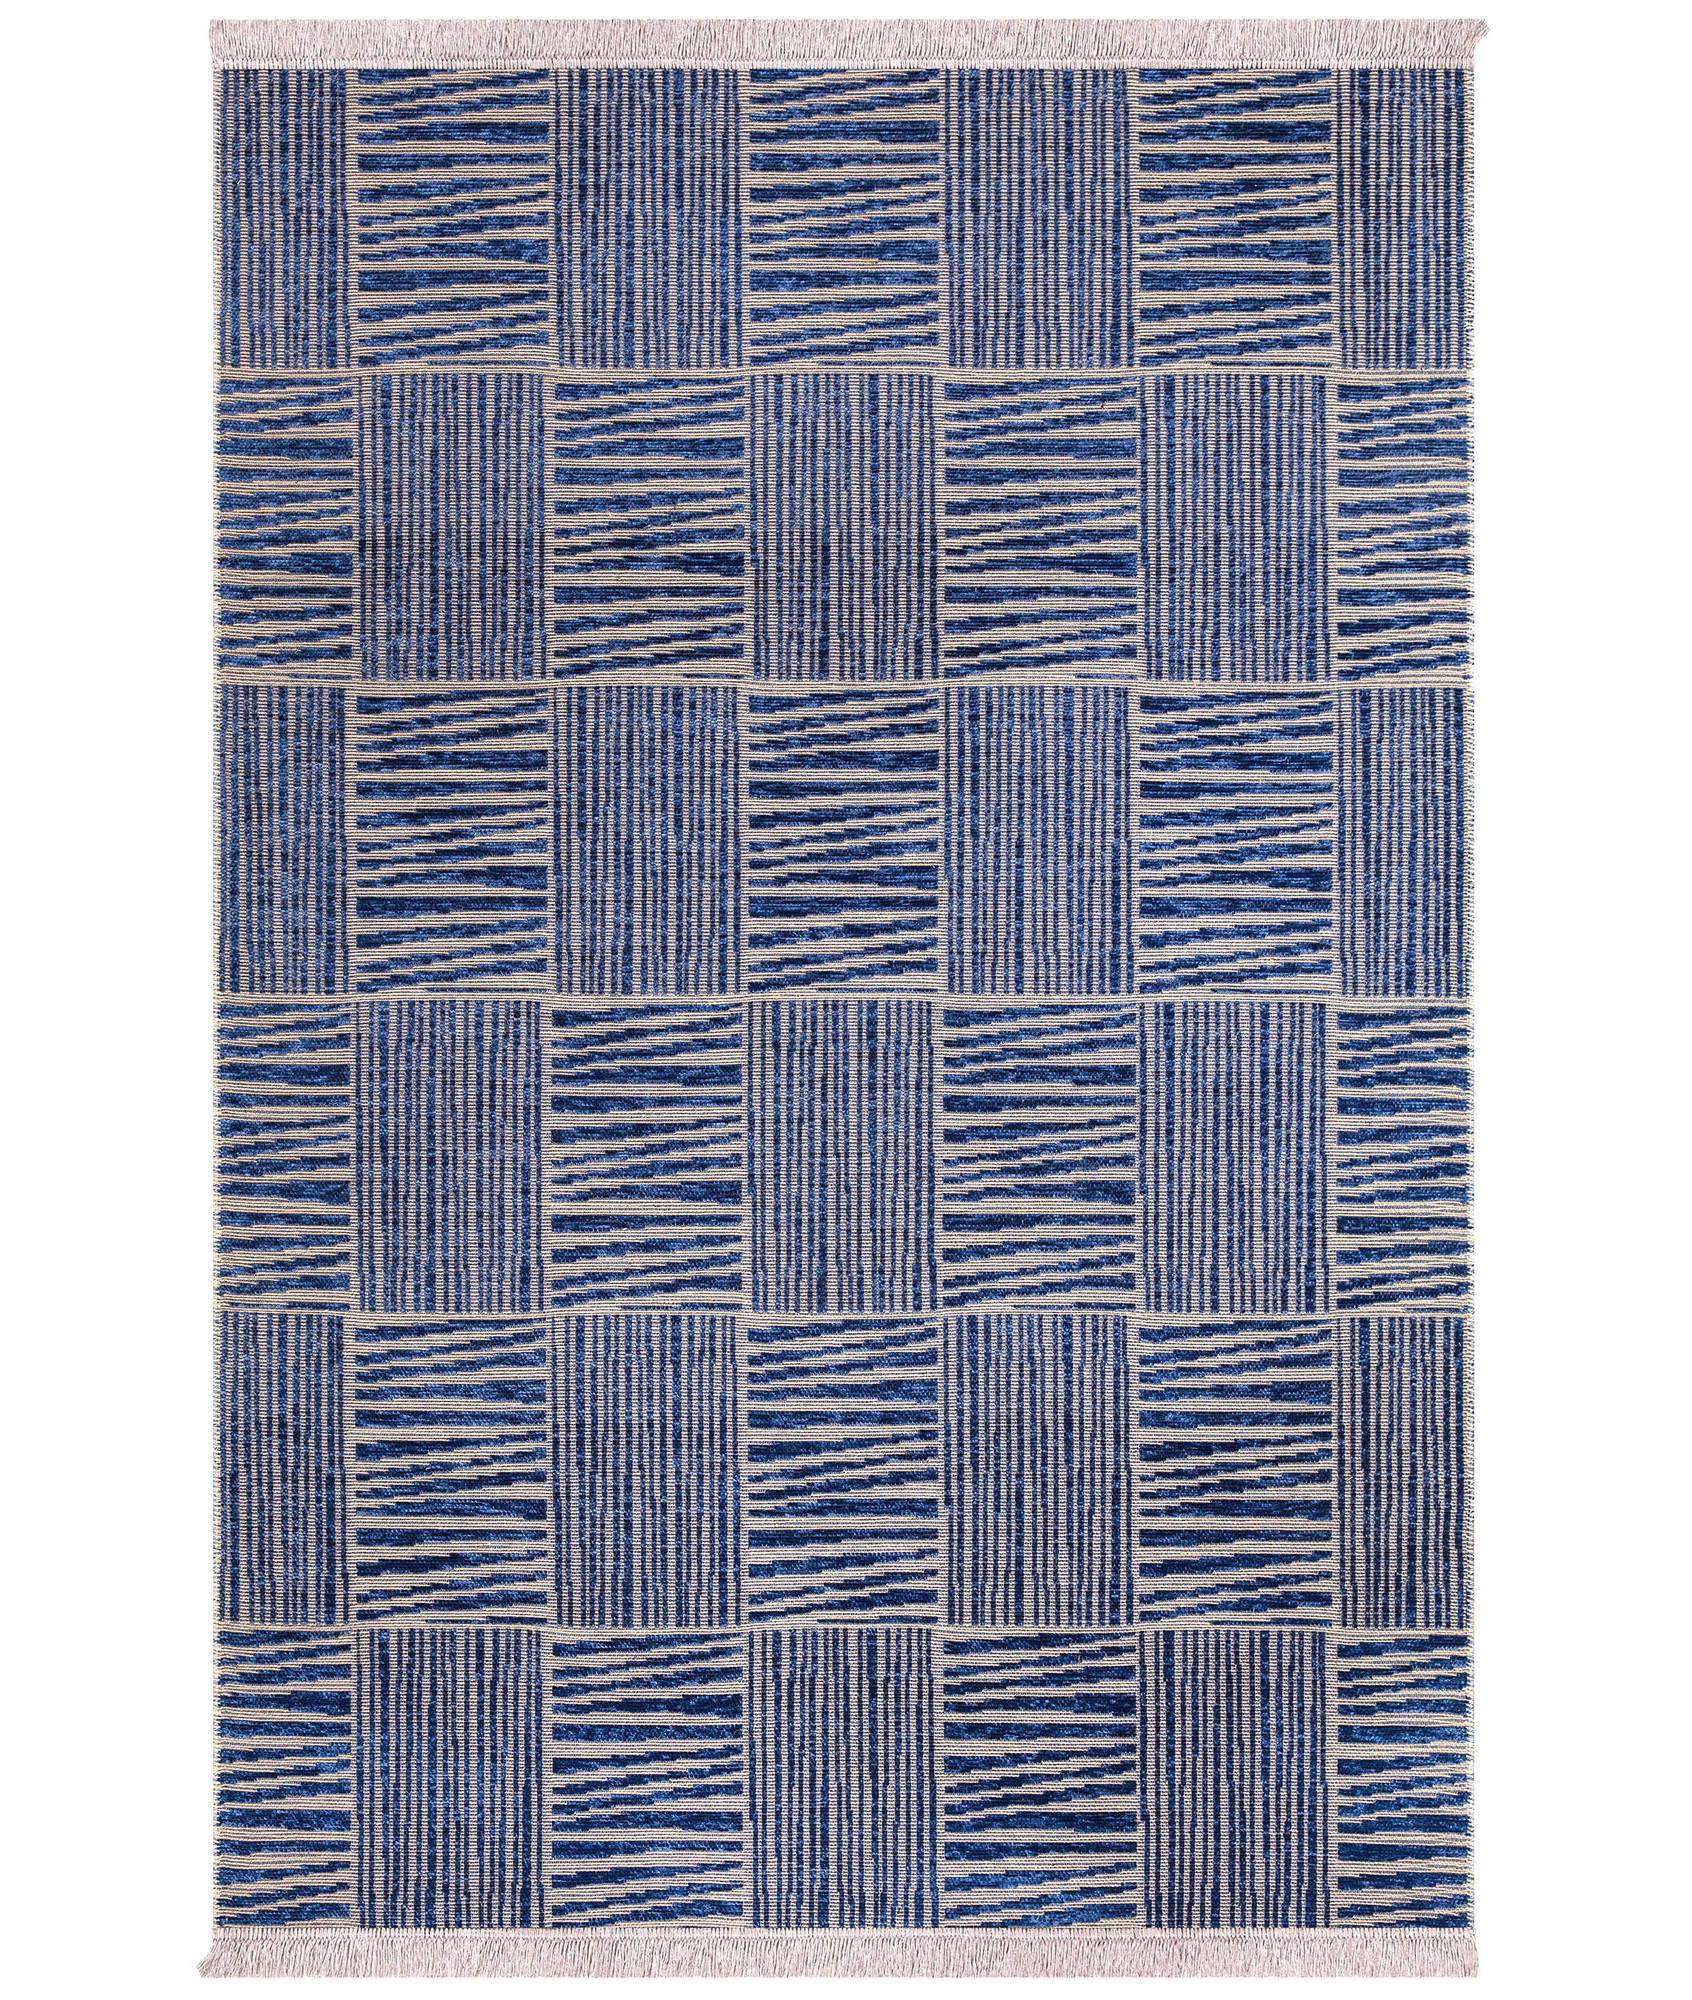 Tapijt Uzoma 80x150cm Jute patroon met marineblauwe en beige strepen